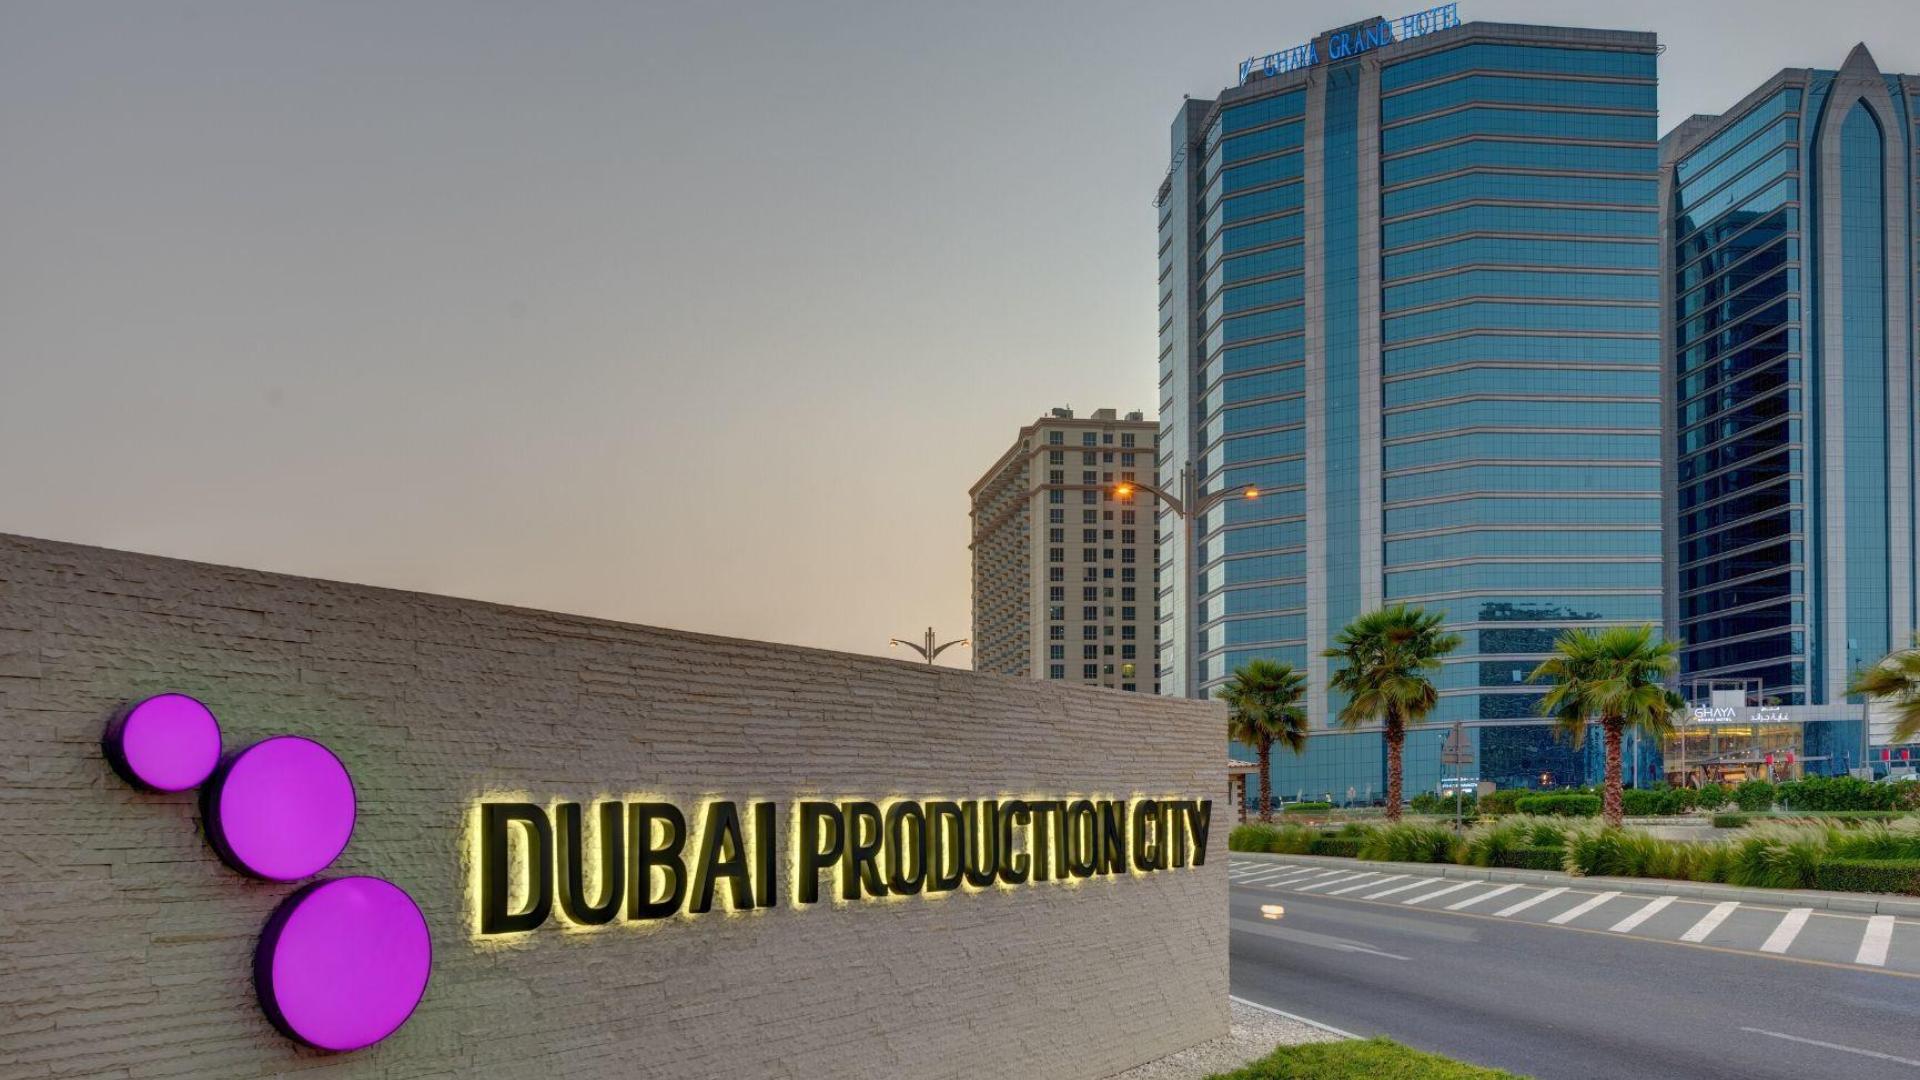 Dubai Production City (IMPZ) - 1